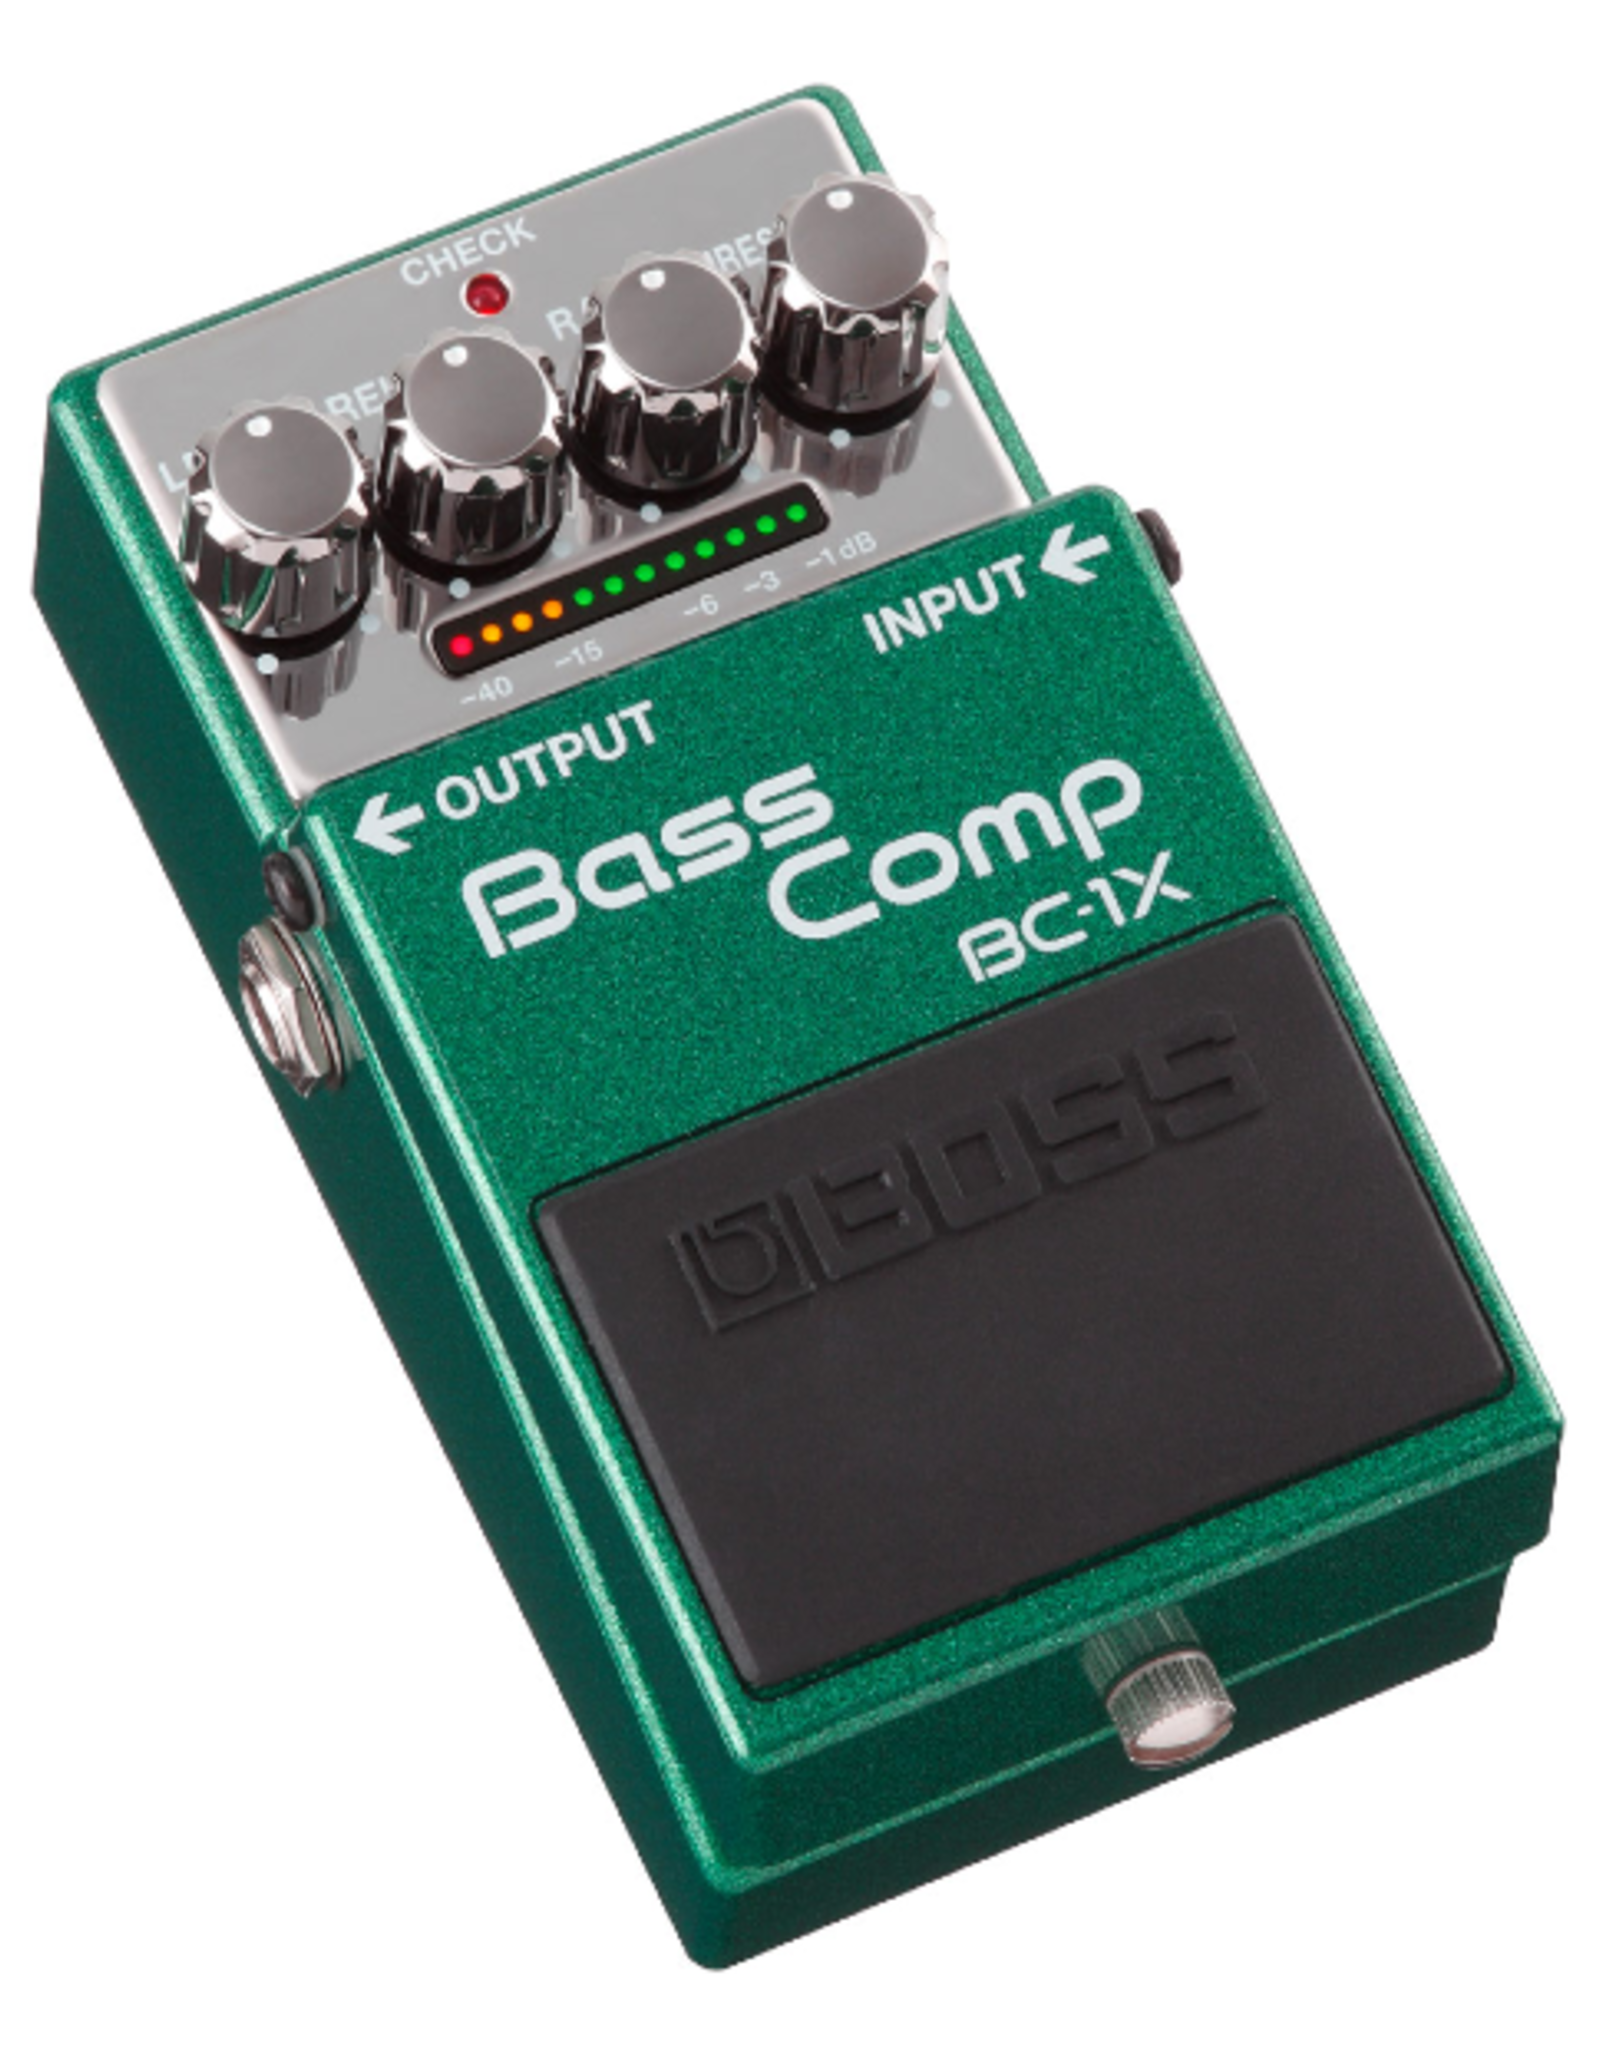 Boss Boss BC-1X Bass Comp